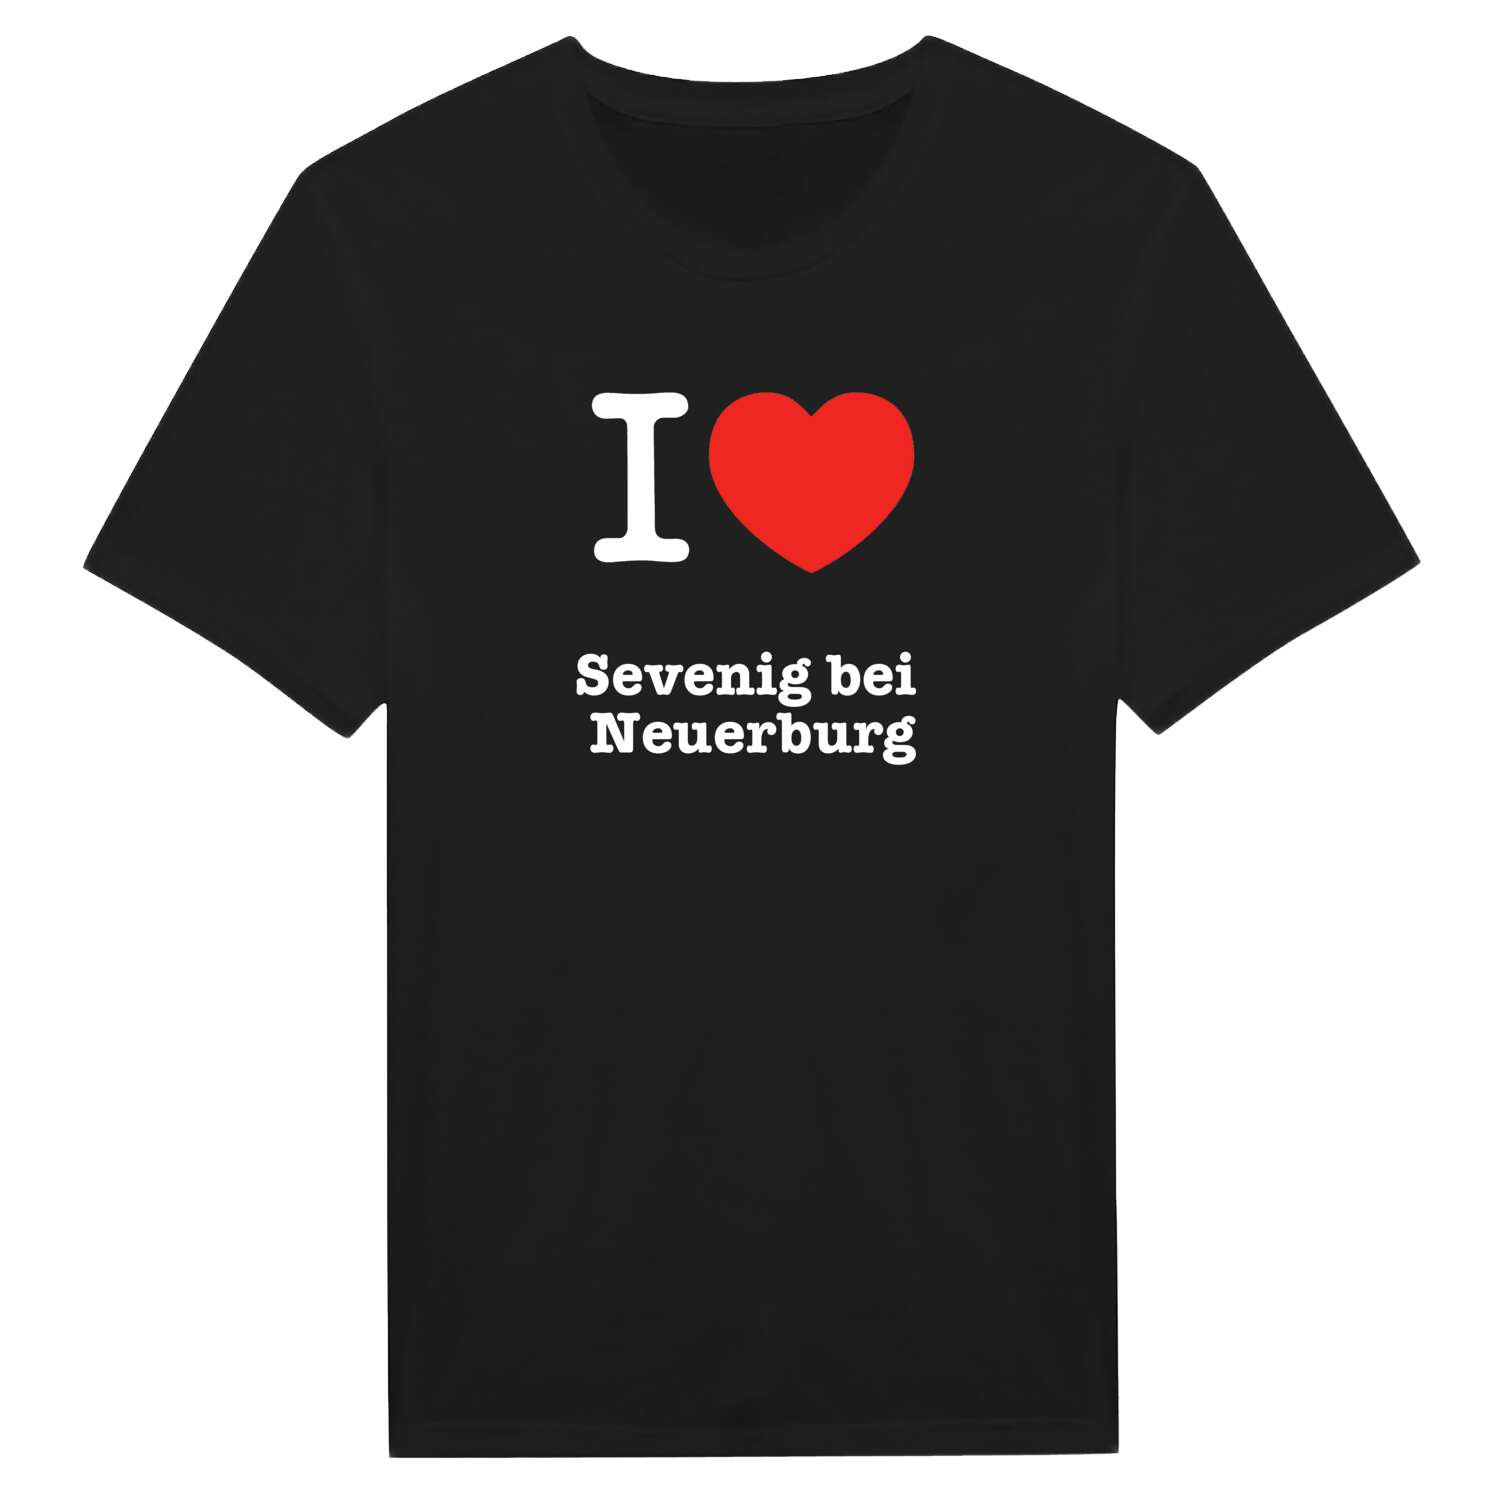 Sevenig bei Neuerburg T-Shirt »I love«